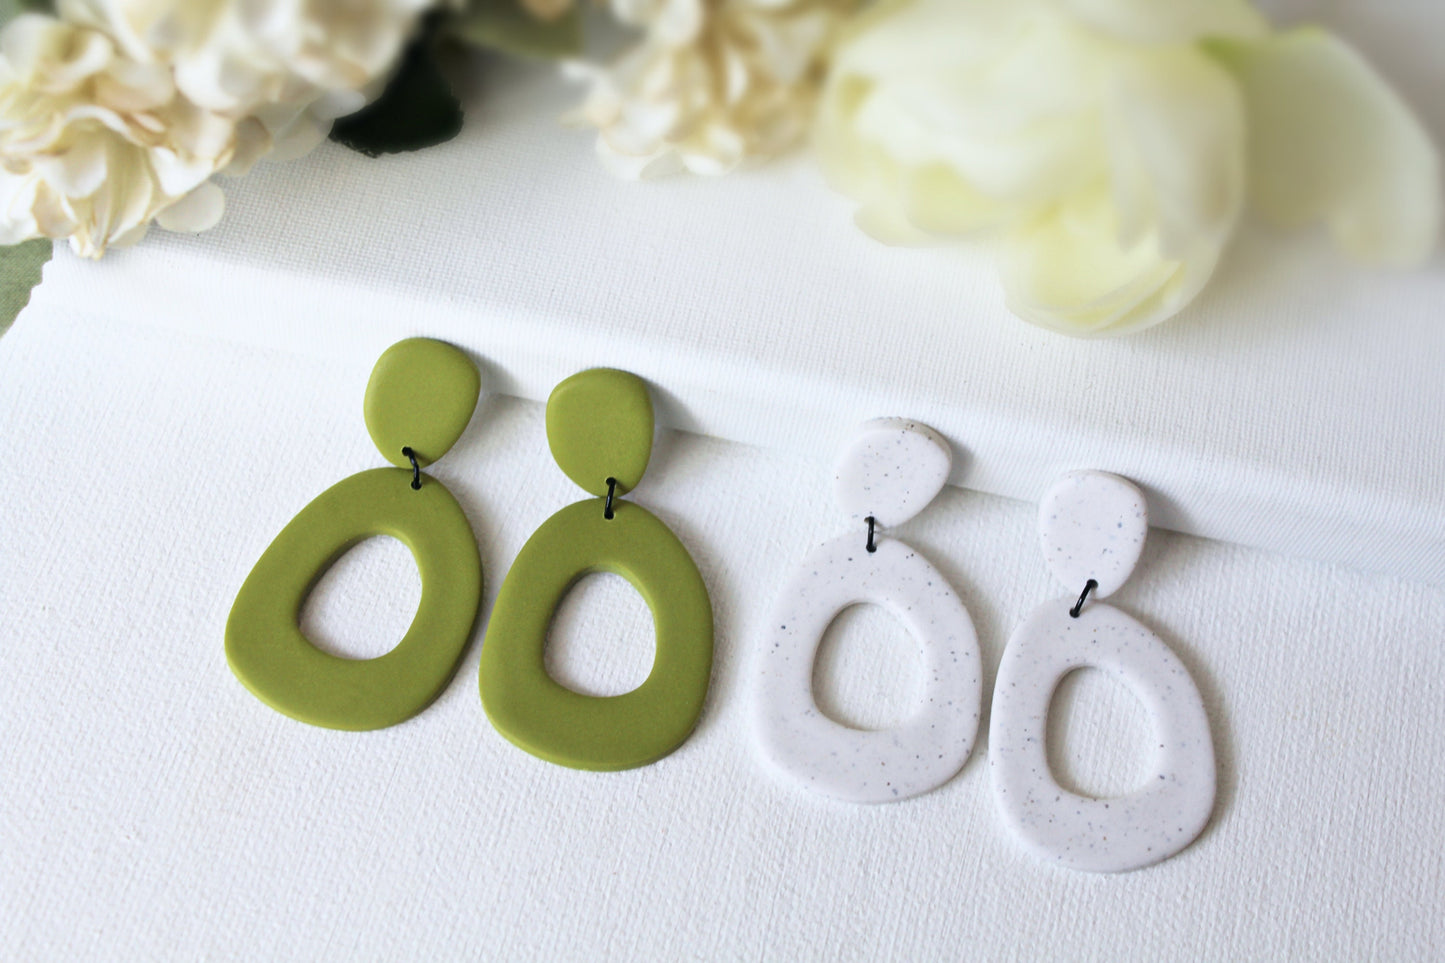 Large Statement Earrings, Dangle Earrings, Statement Earrings, Polymer Clay Earrings, Spring Earrings, Modern Earrings, Green, White